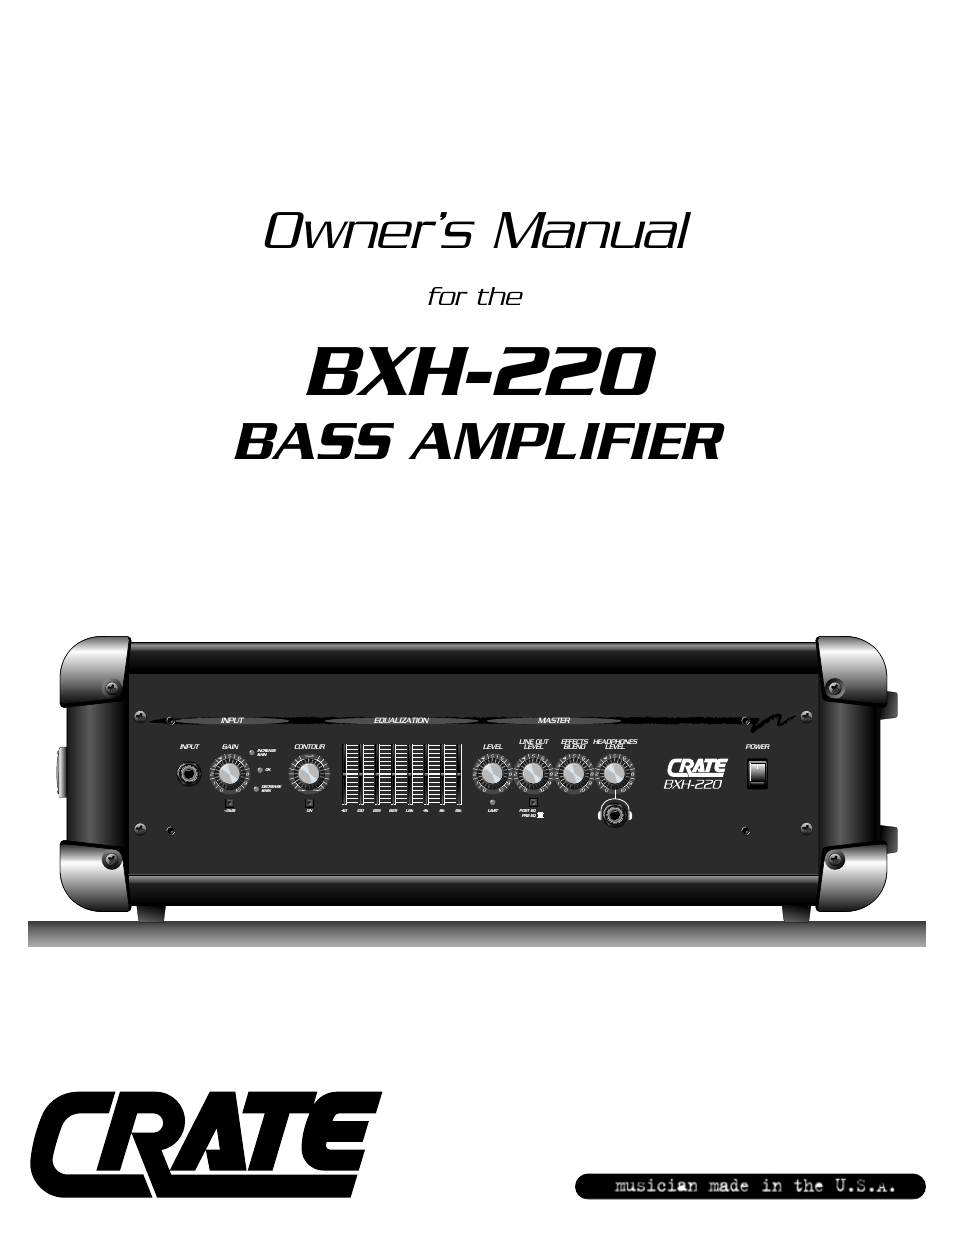 BXH-220